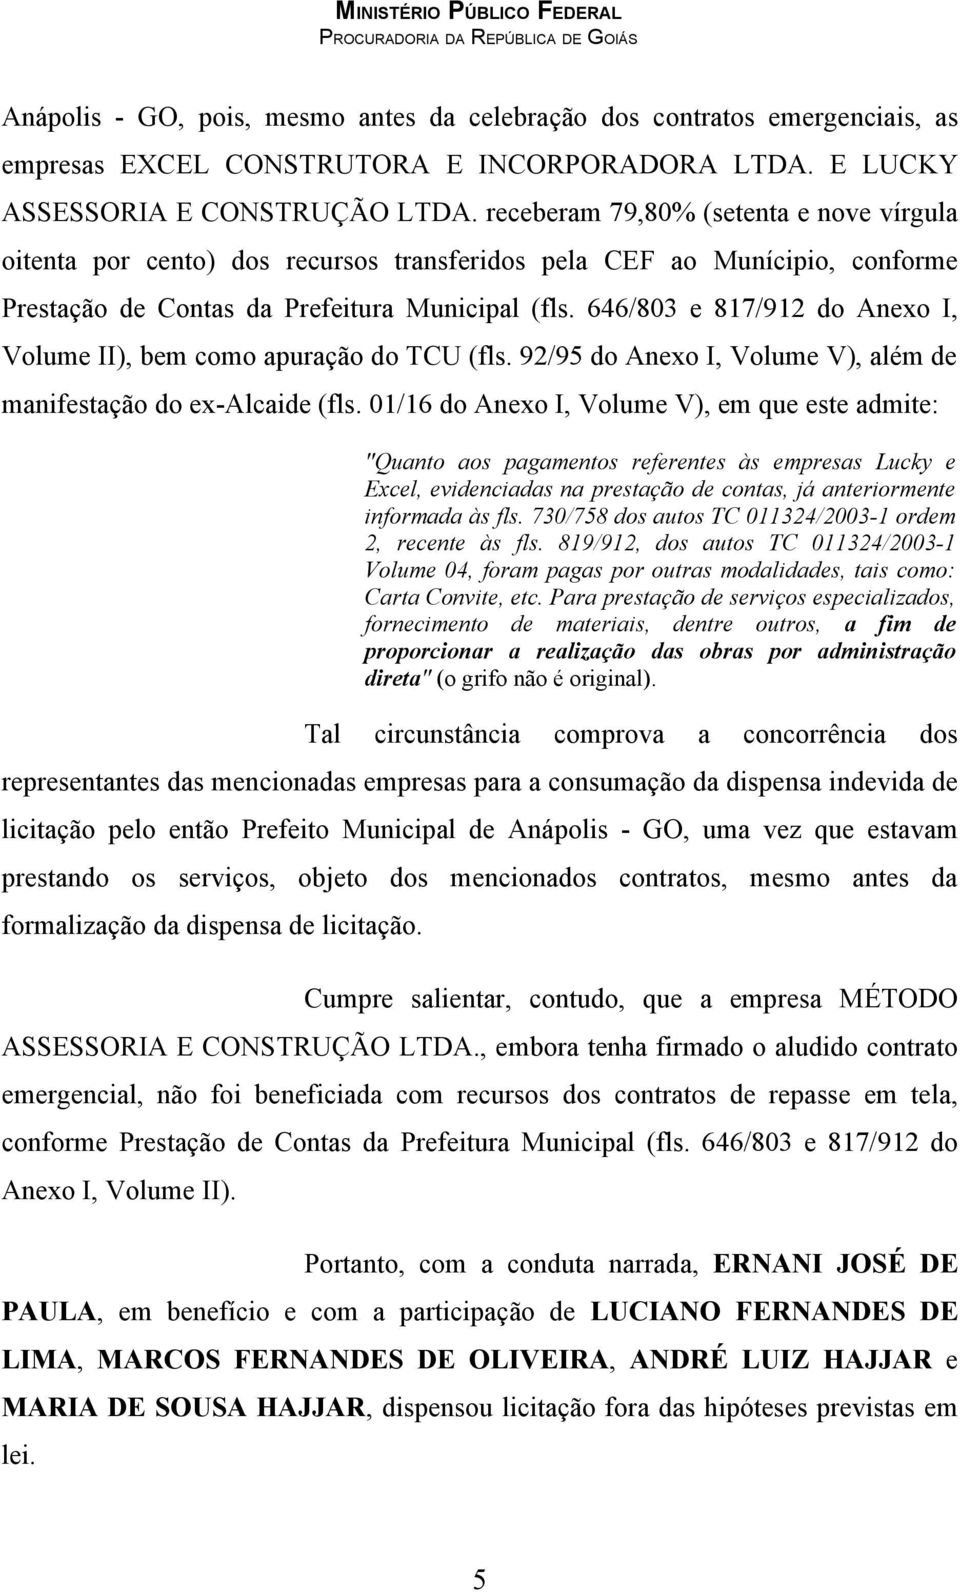 646/803 e 817/912 do Anexo I, Volume II), bem como apuração do TCU (fls. 92/95 do Anexo I, Volume V), além de manifestação do ex-alcaide (fls.